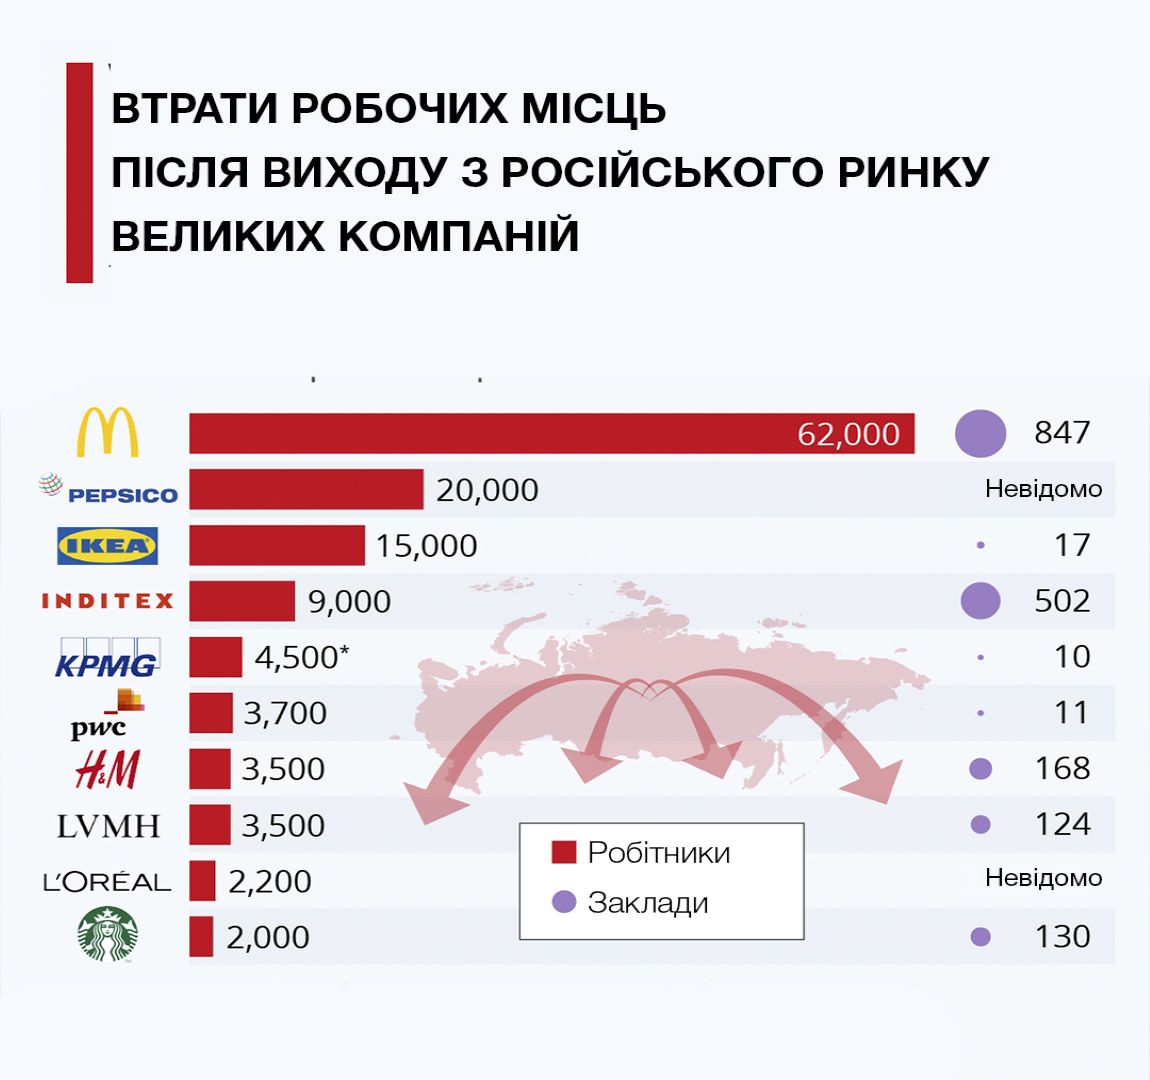 Последствия выхода крупных компаний с российского рынка